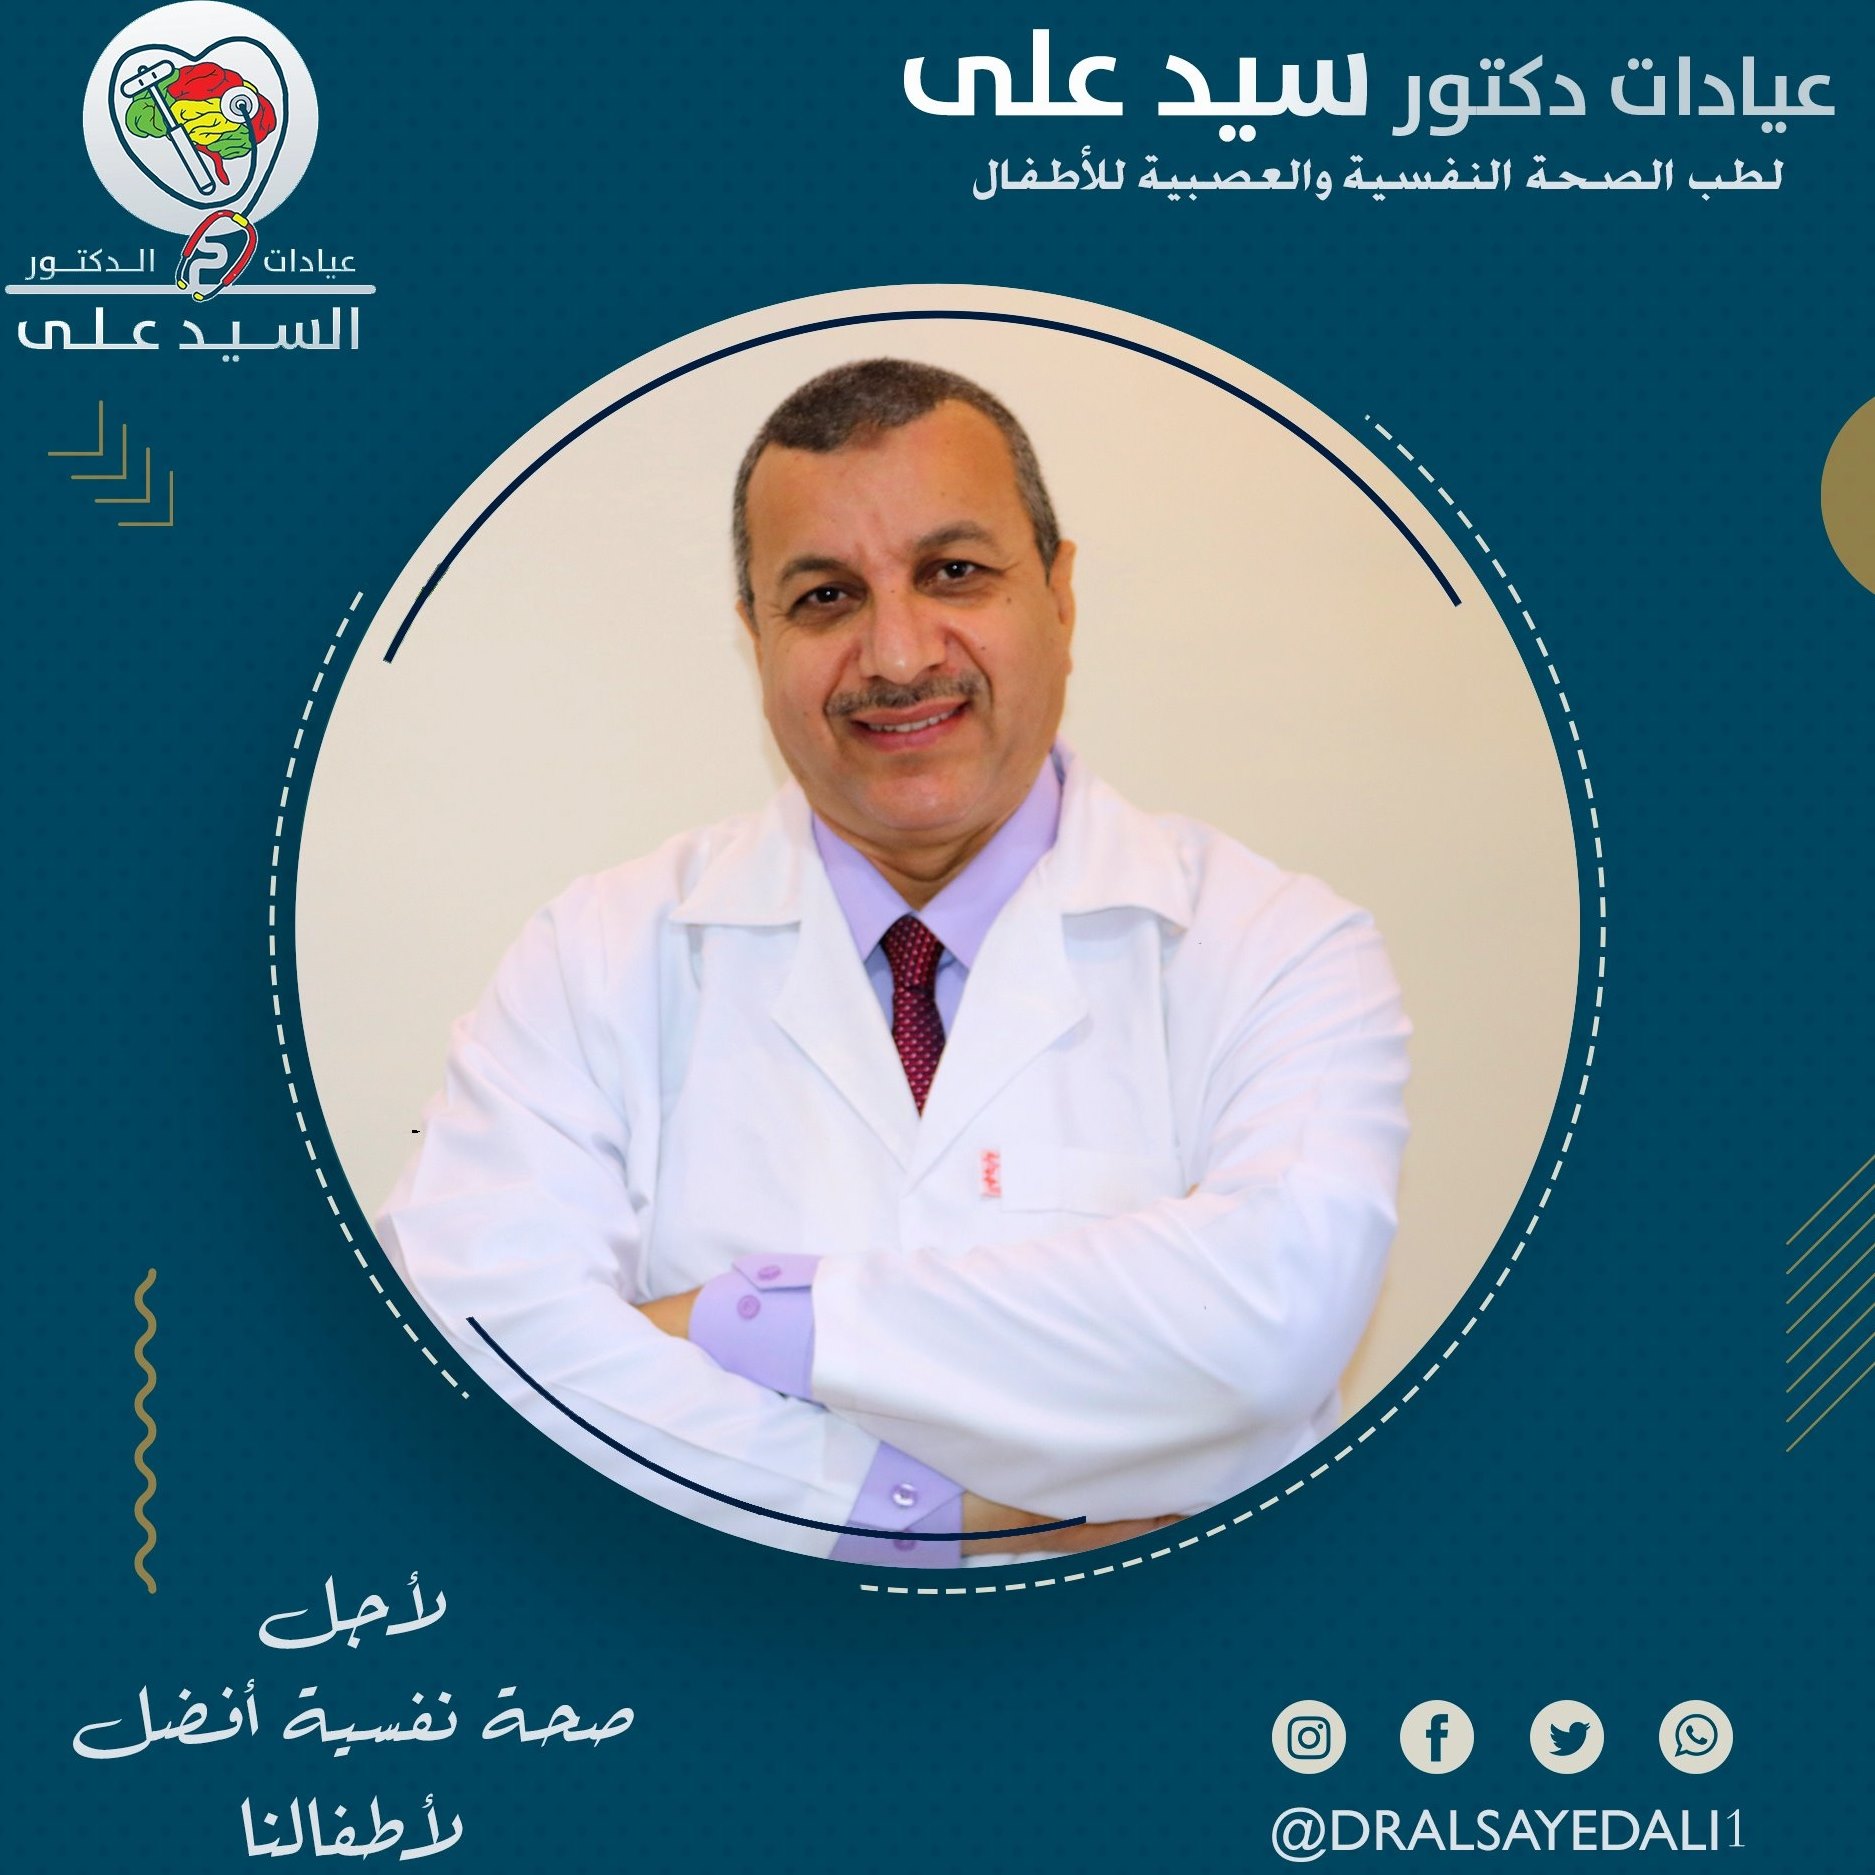 Dr. El-Sayed Ali